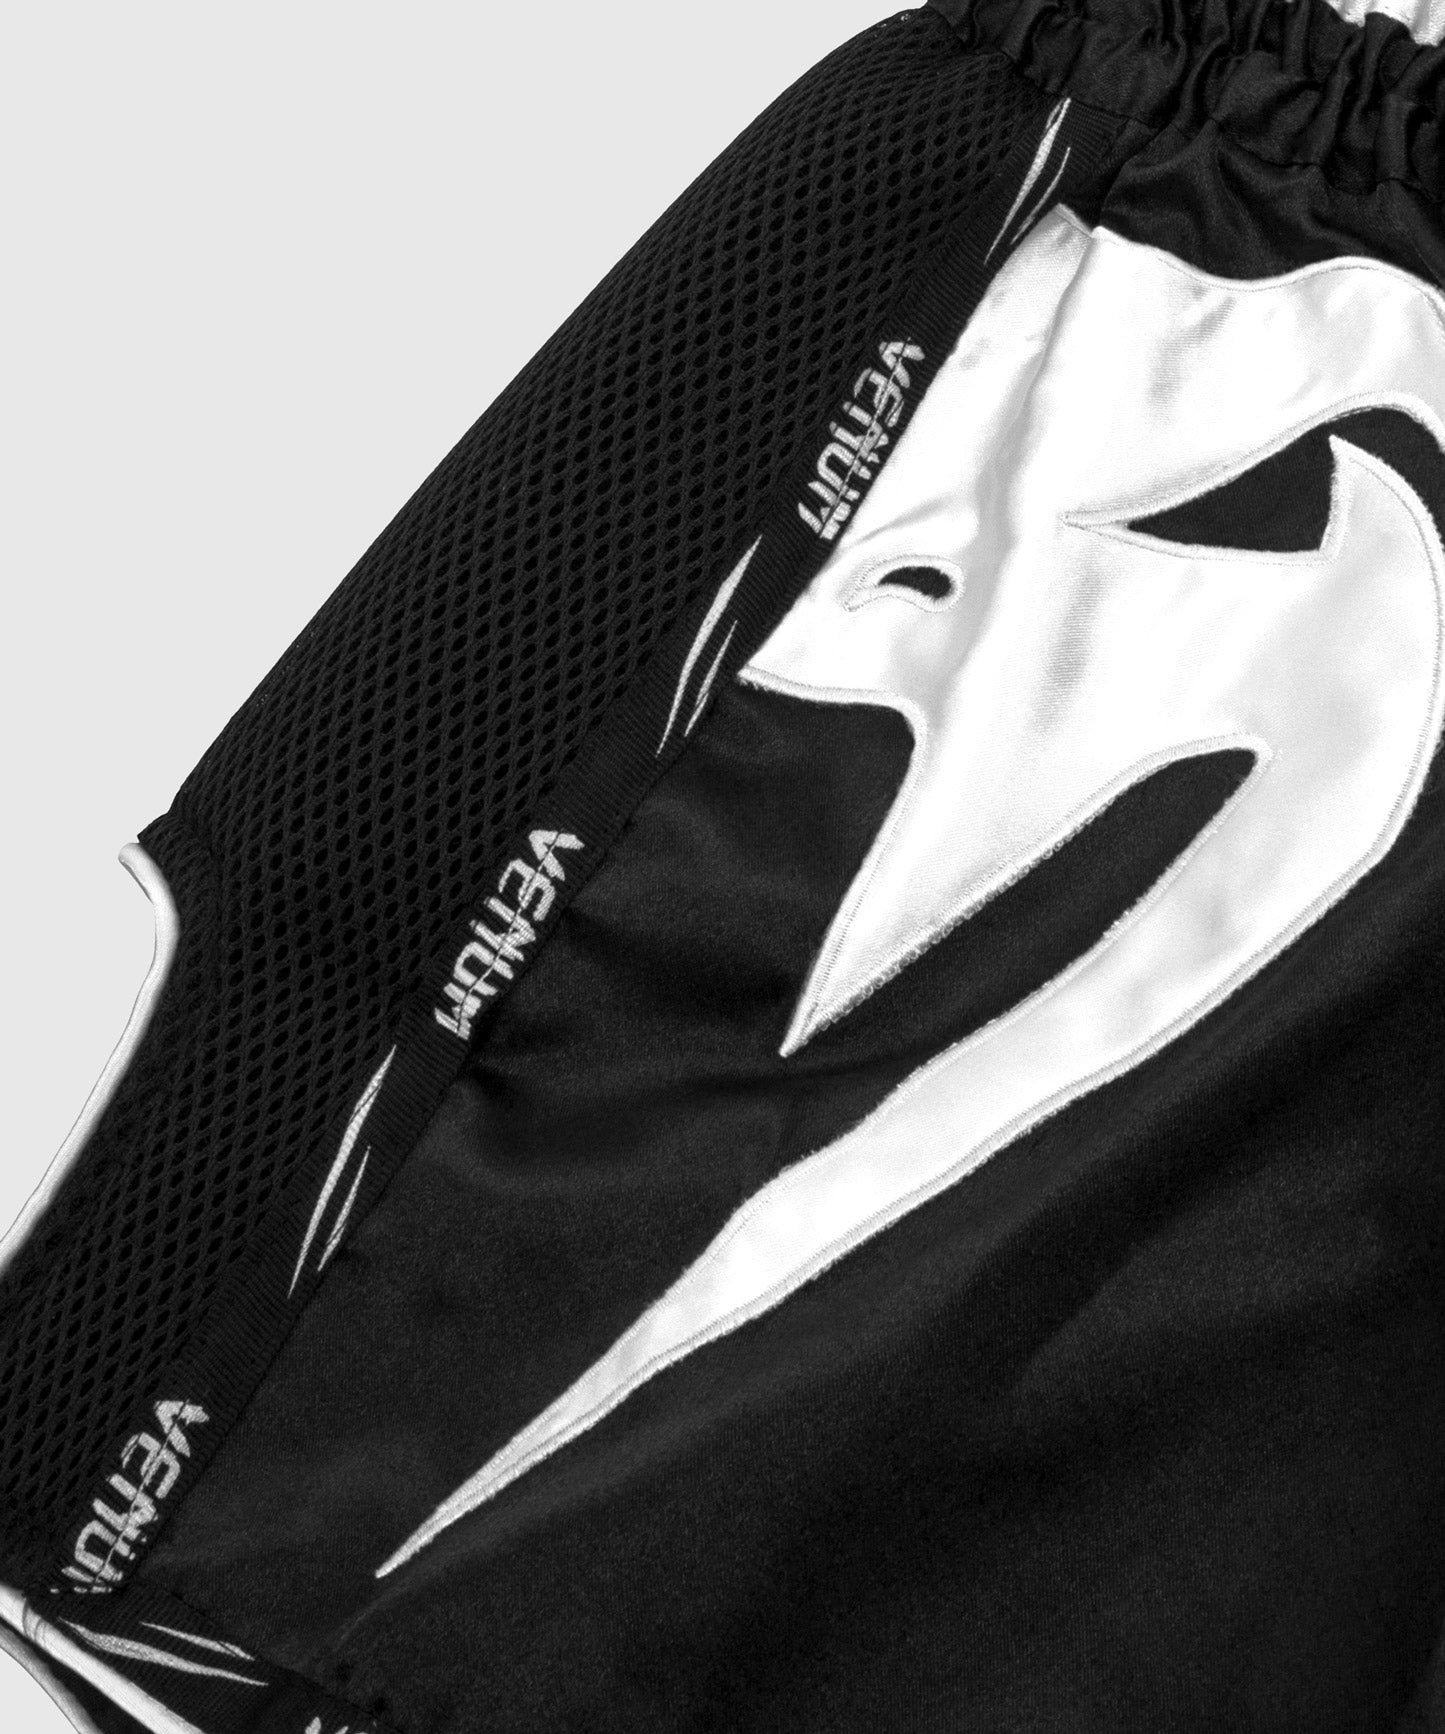 Venum Giant Muay Thai Shorts - Black/White